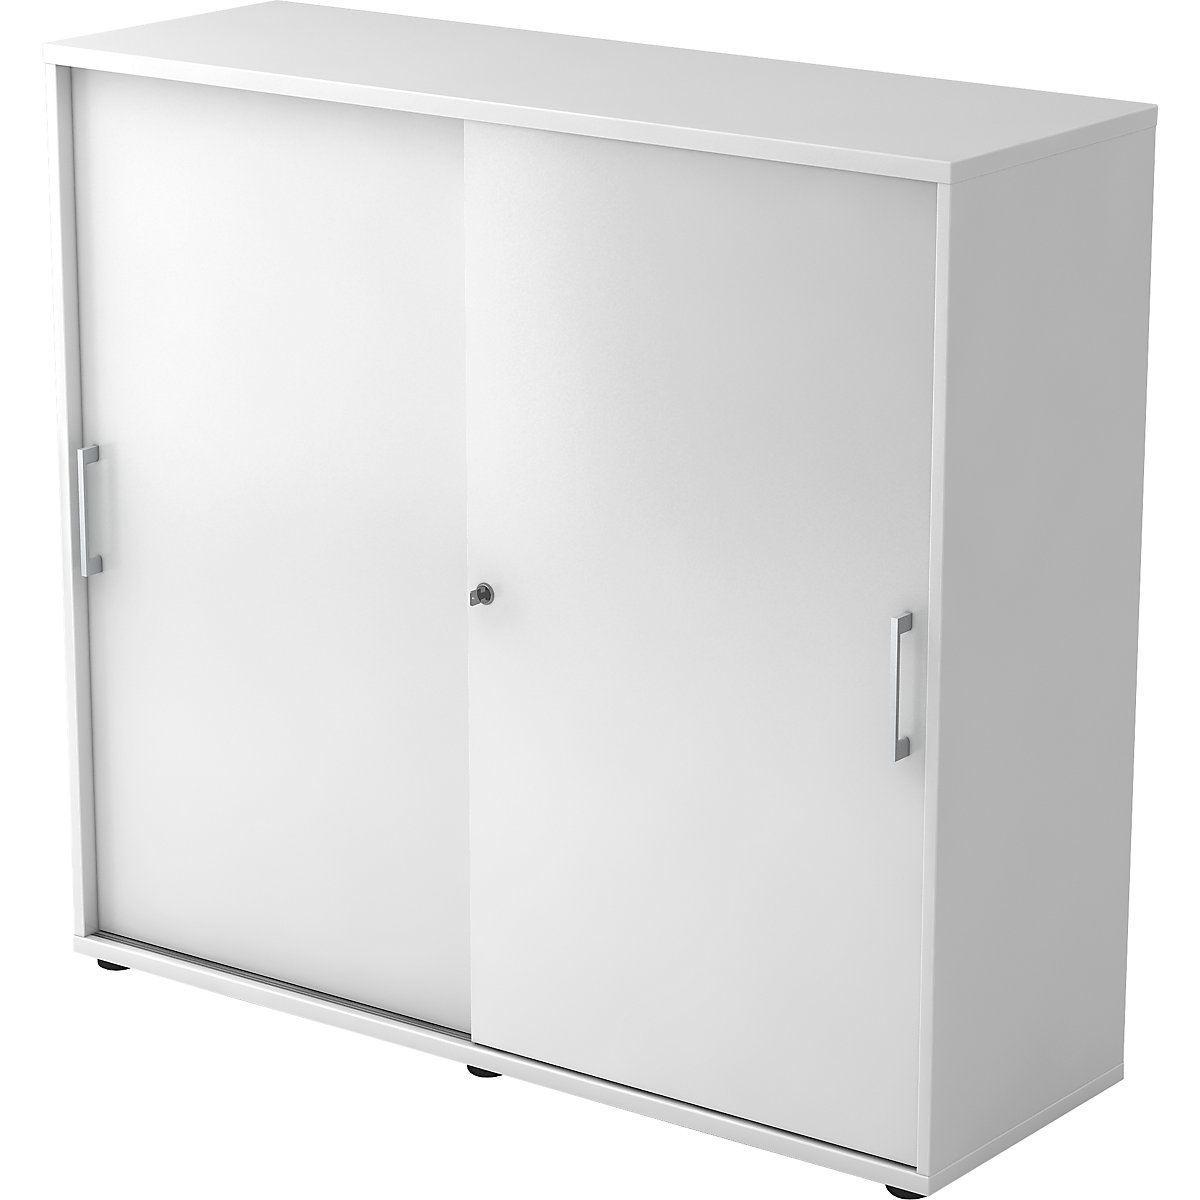 Sliding door cupboard – eurokraft pro, height 1100 mm, 2 shelves, white-10